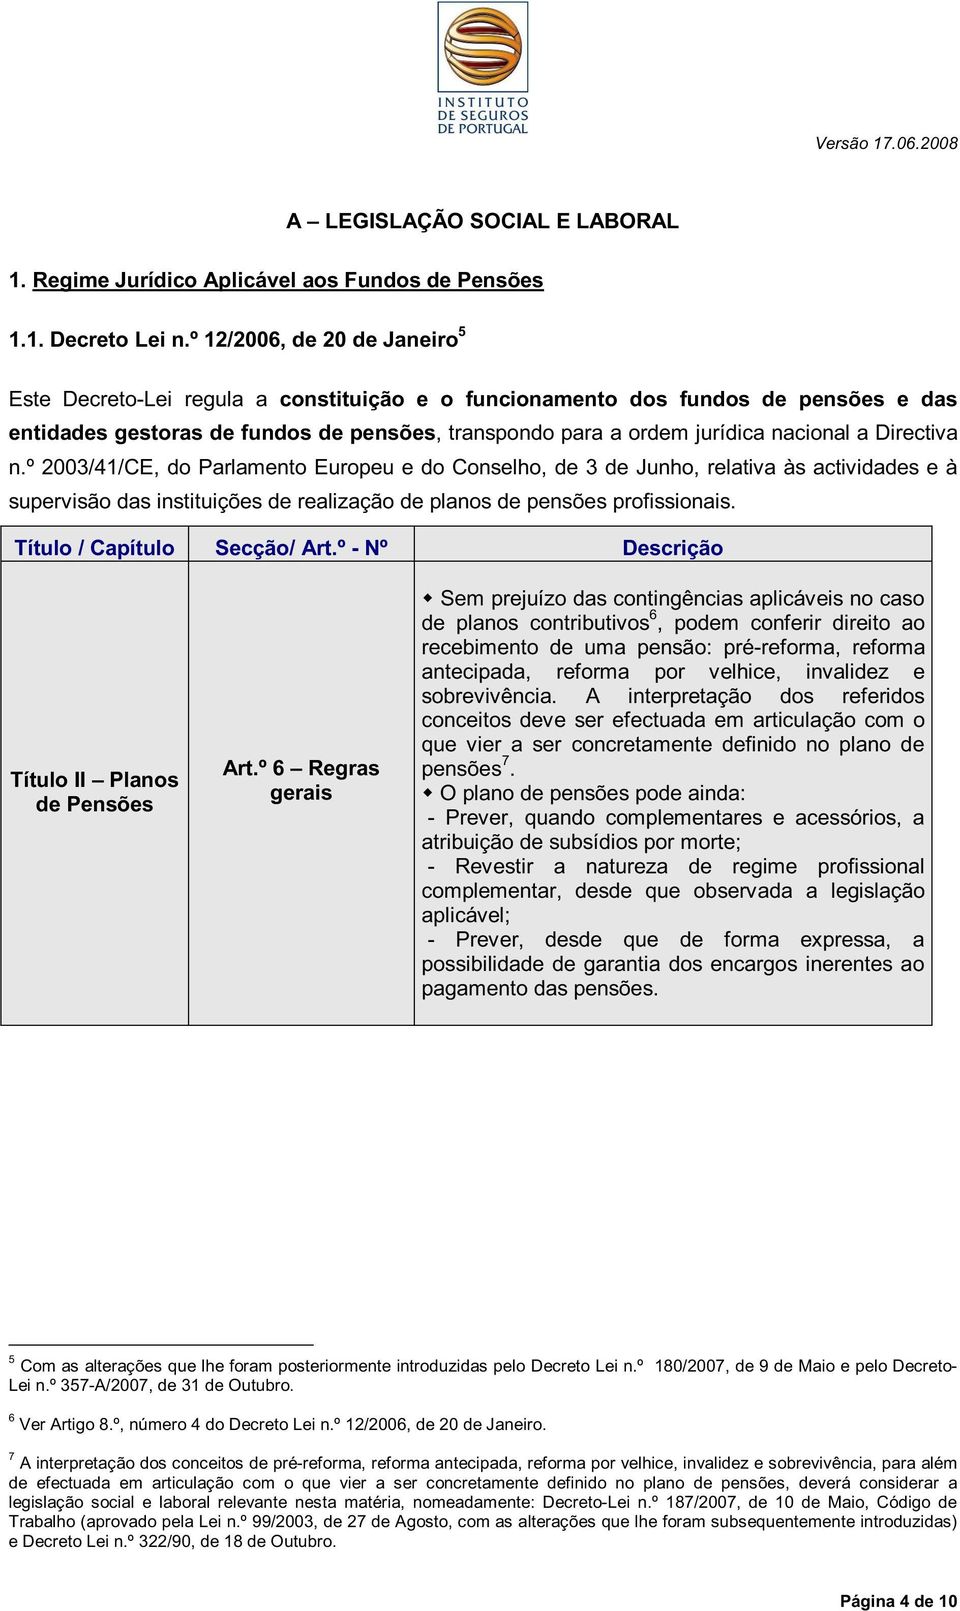 Directiva n.º 2003/41/CE, do Parlamento Europeu e do Conselho, de 3 de Junho, relativa às actividades e à supervisão das instituições de realização de planos de pensões profissionais.